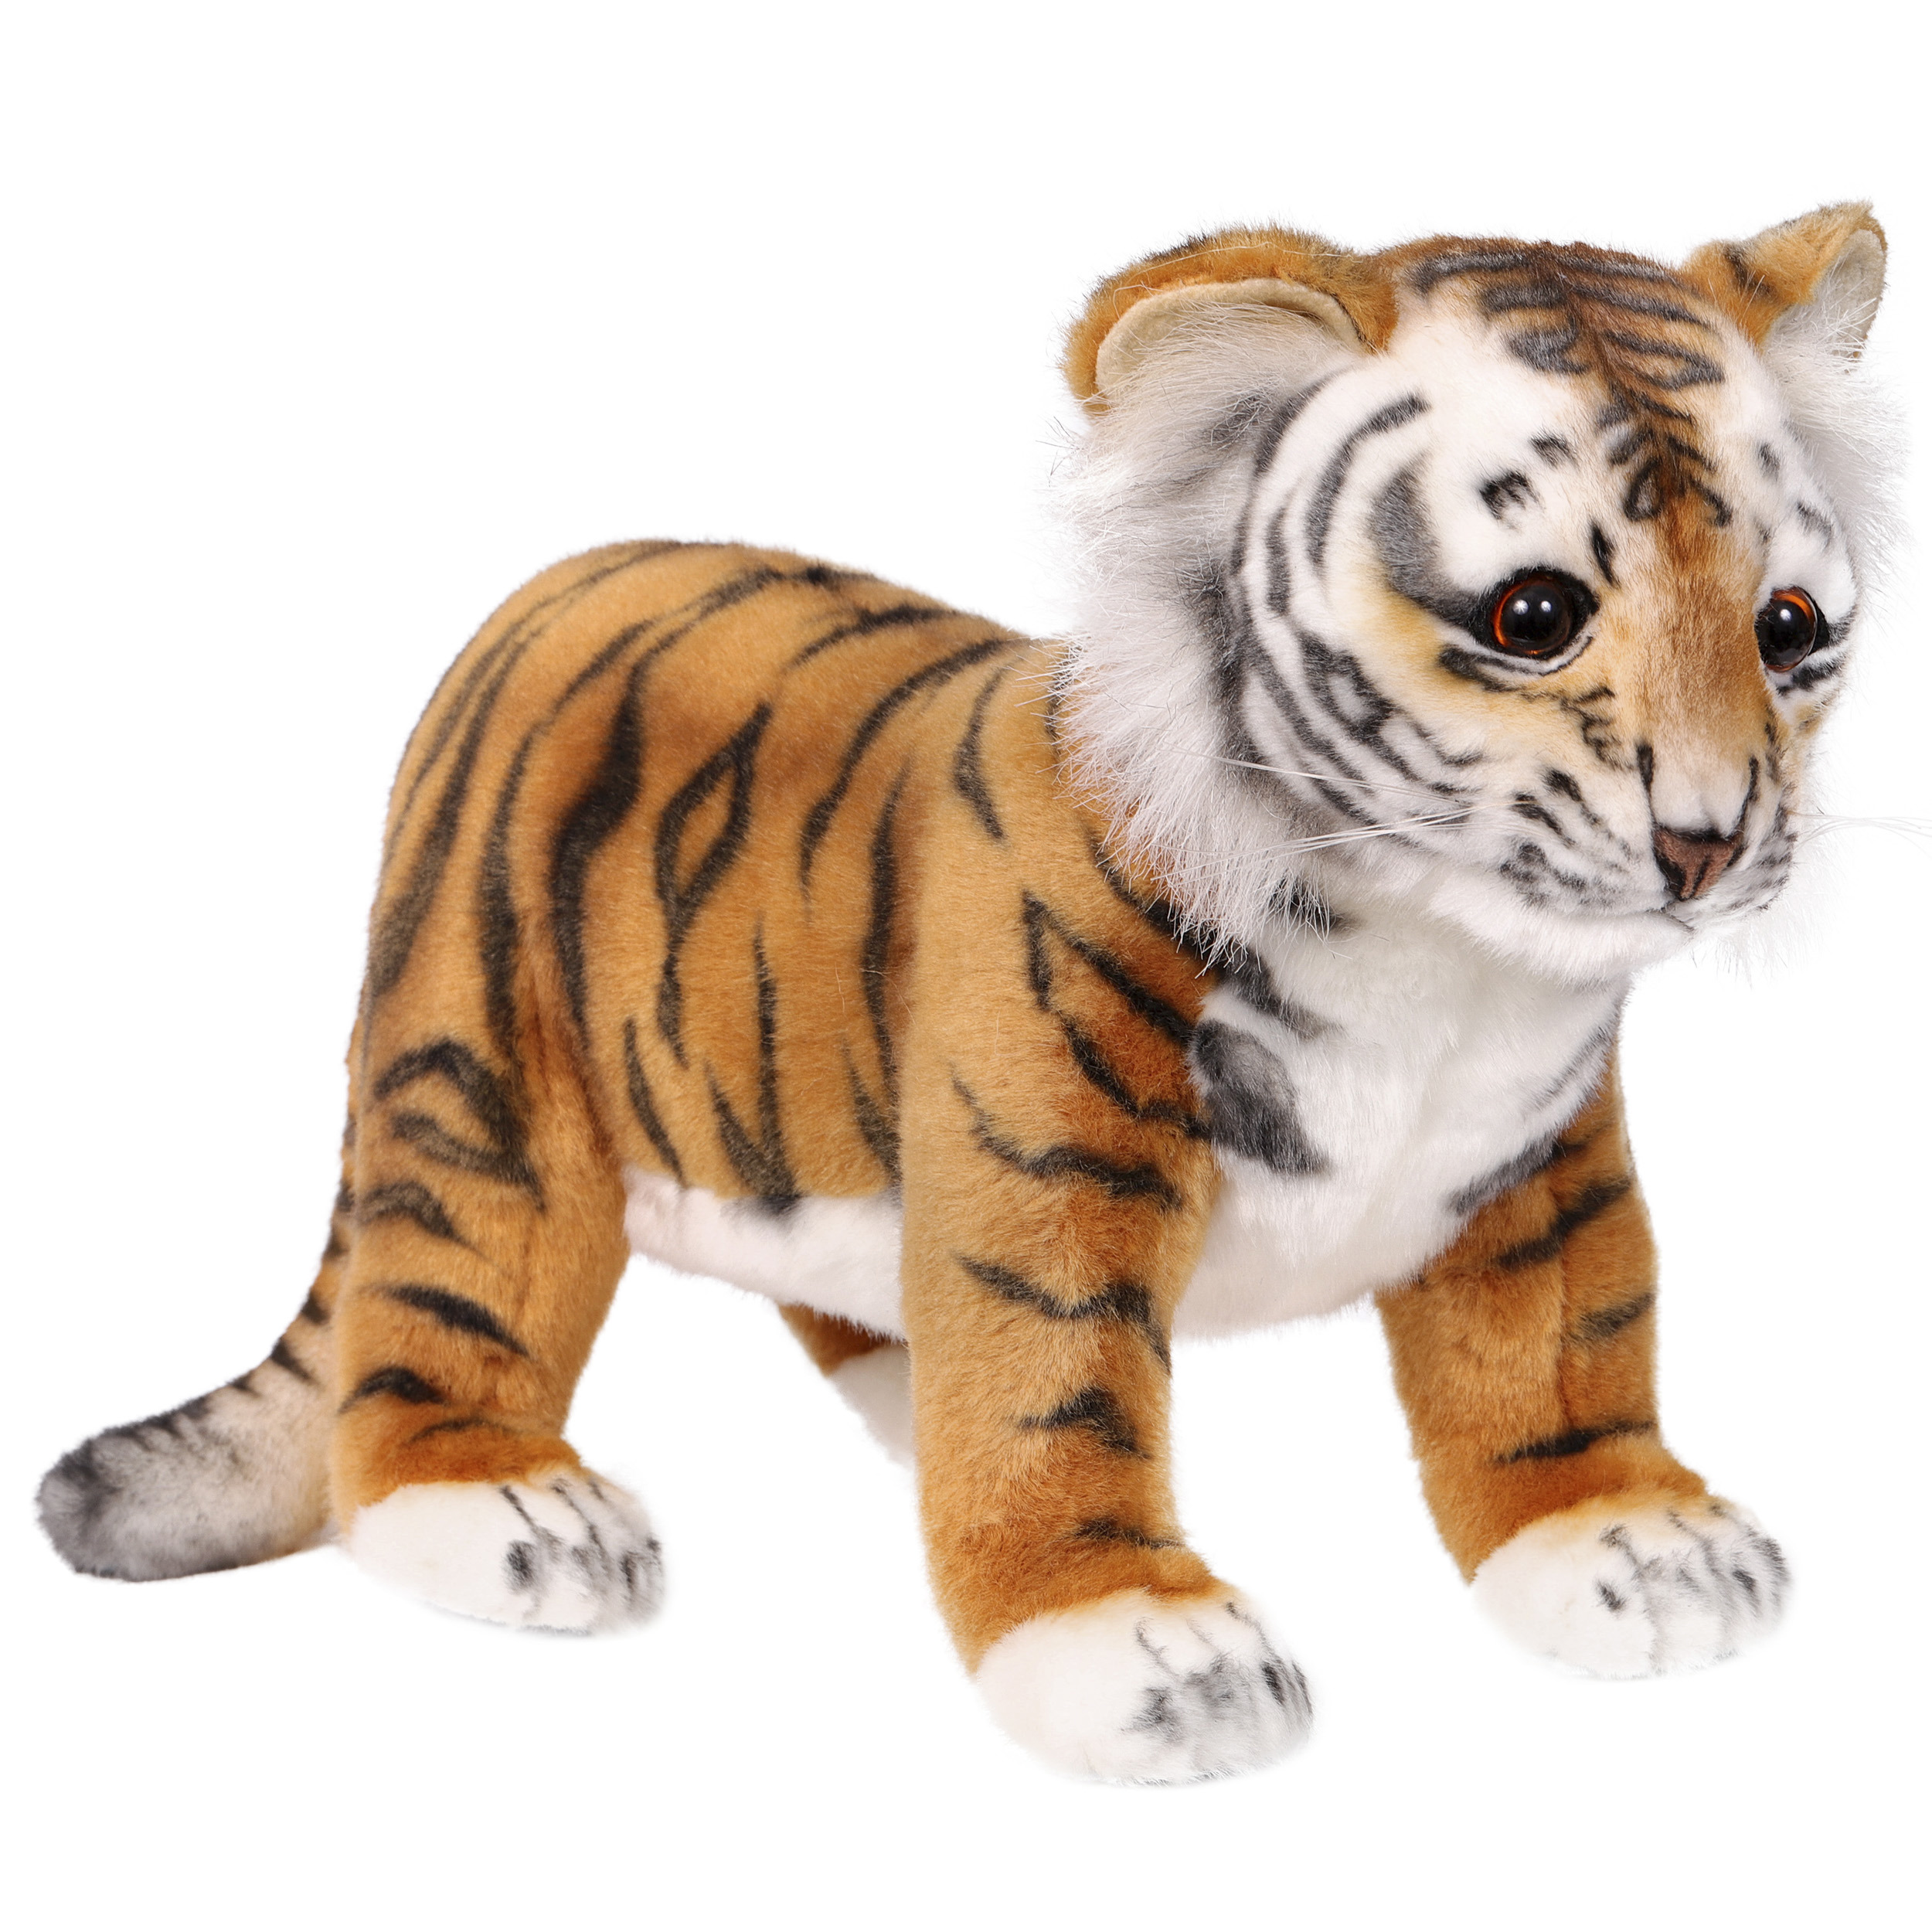 Мягкая игрушка реалистичный Тигр 25см. БЕБИЛЕНД купить в интернет-магазине Wildberries